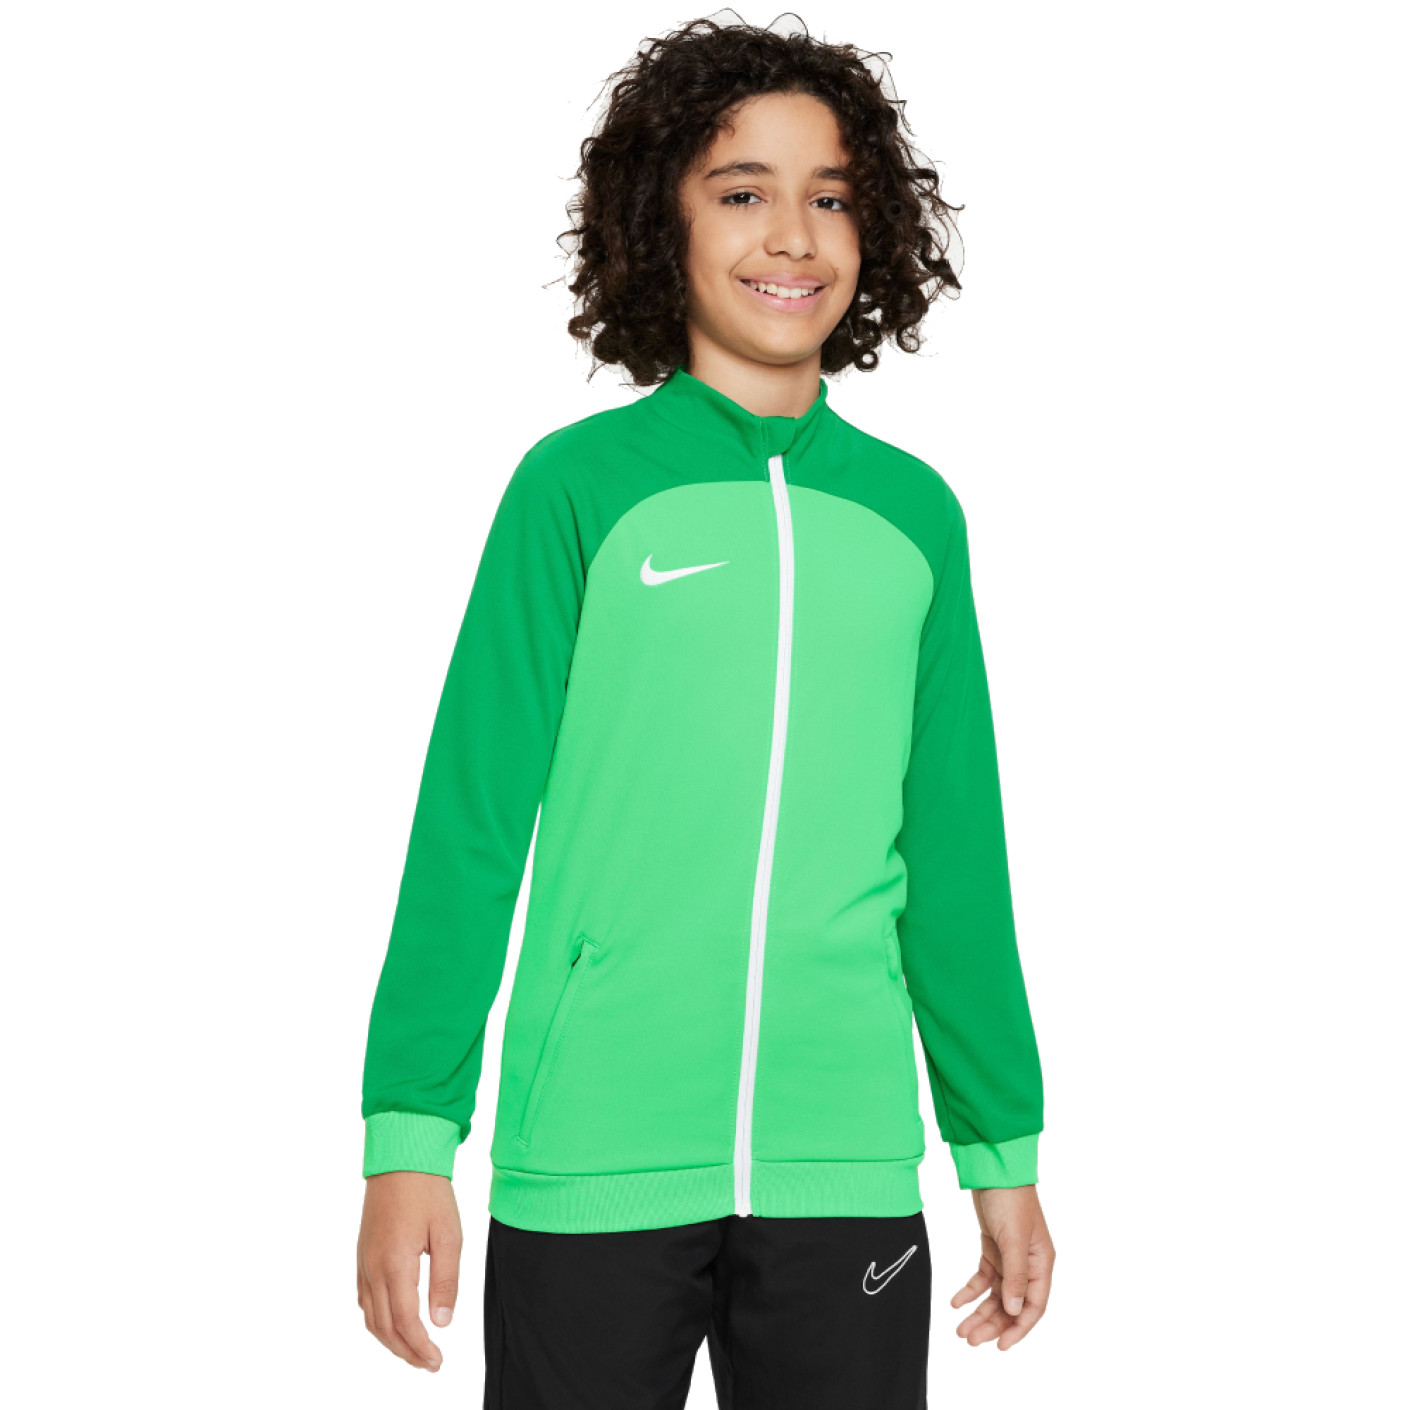 Veste d'entraînement Nike Academy Pro pour enfants, verte